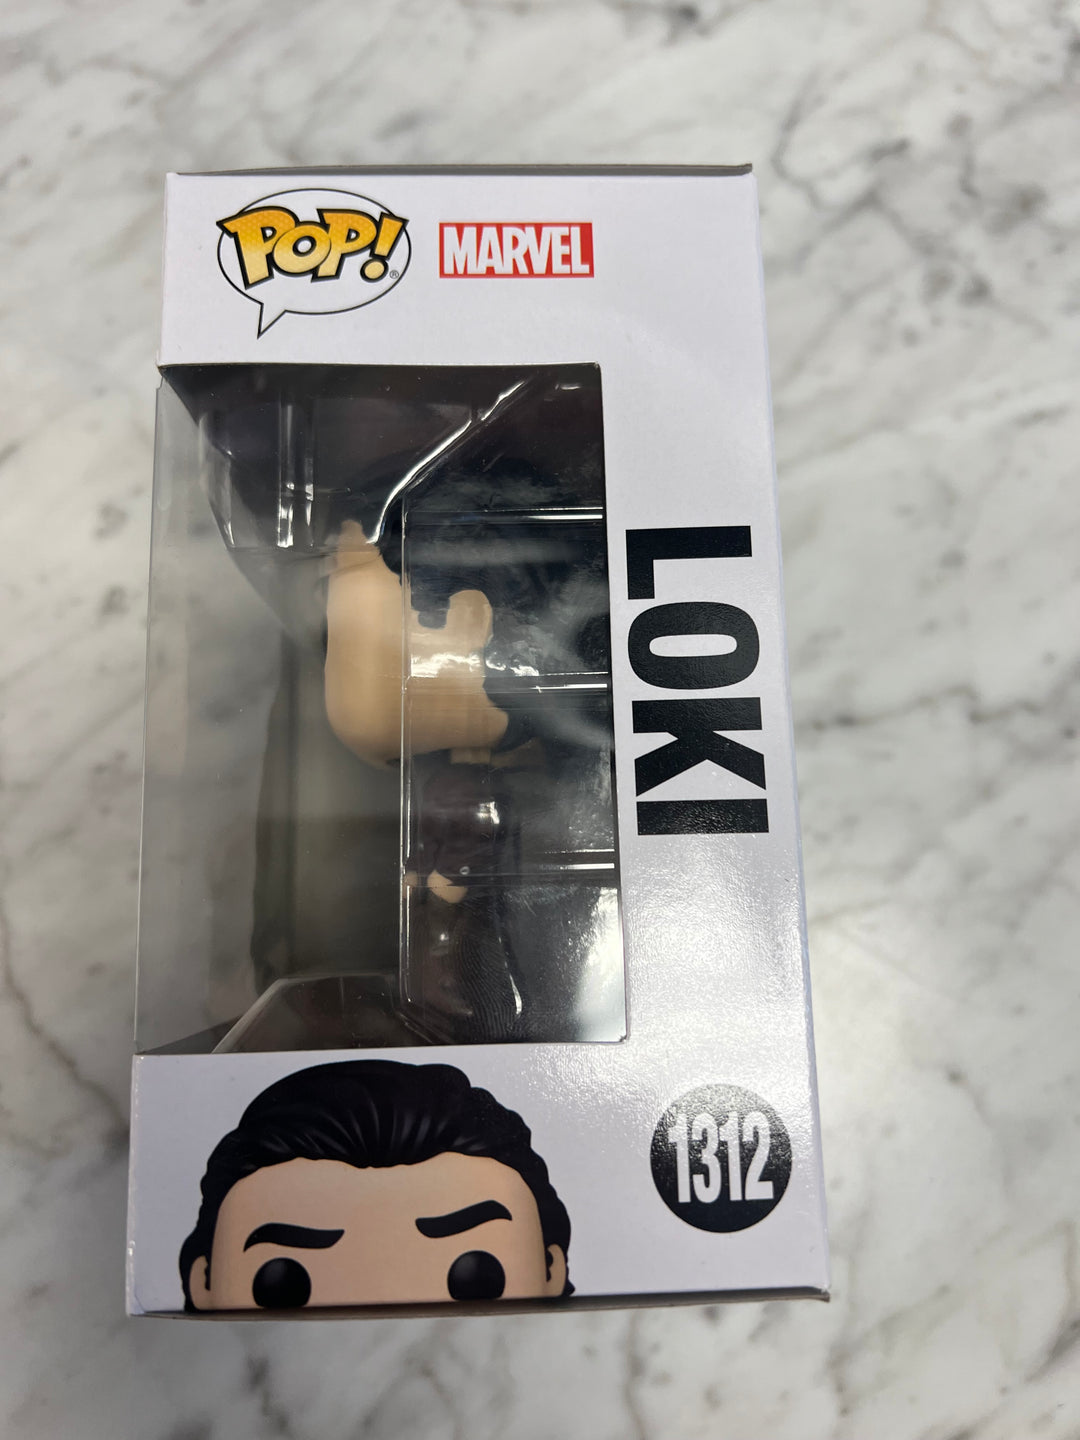 Funko Pop! Marvel Loki Season 2 - Loki w/ Suit and Tie Vinyl Figure # 1312 FP72324